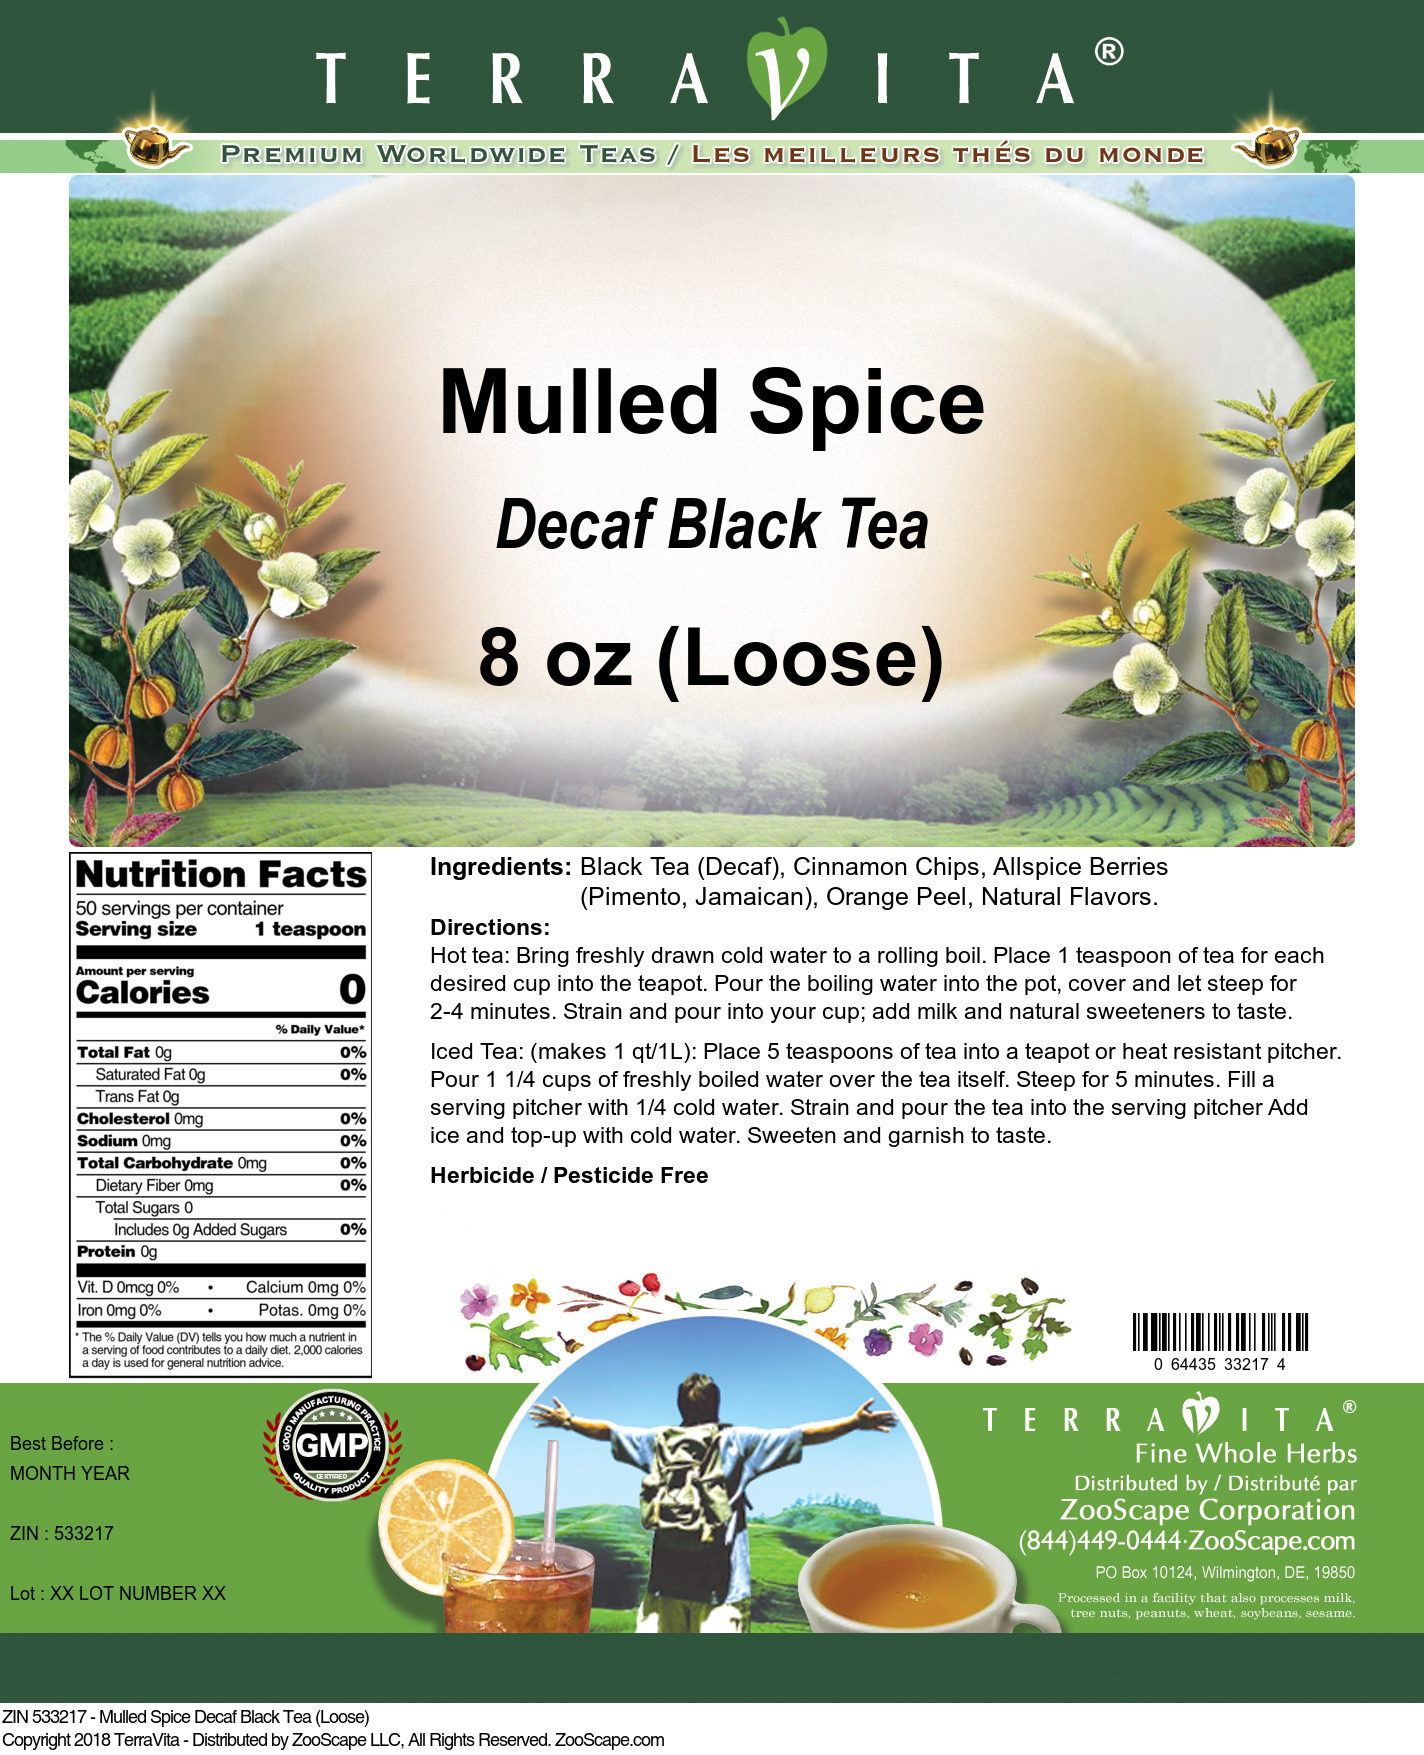 Mulled Spice Decaf Black Tea (Loose) - Label